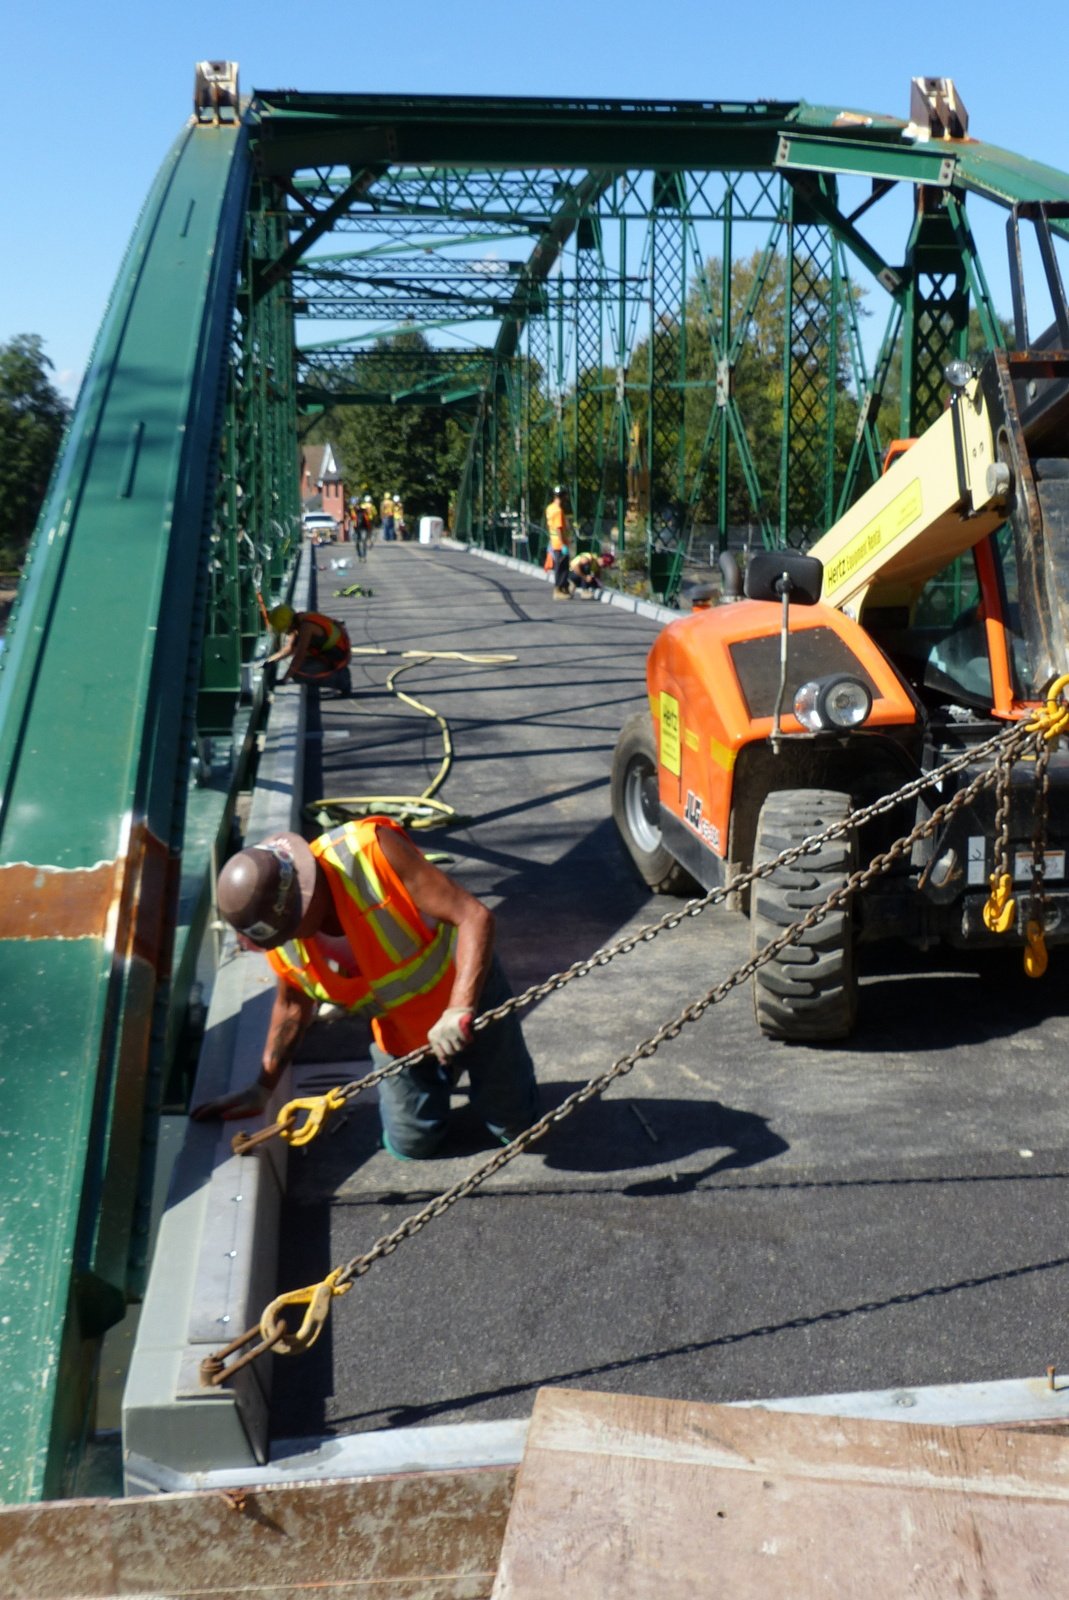 FRP being installed on bridge